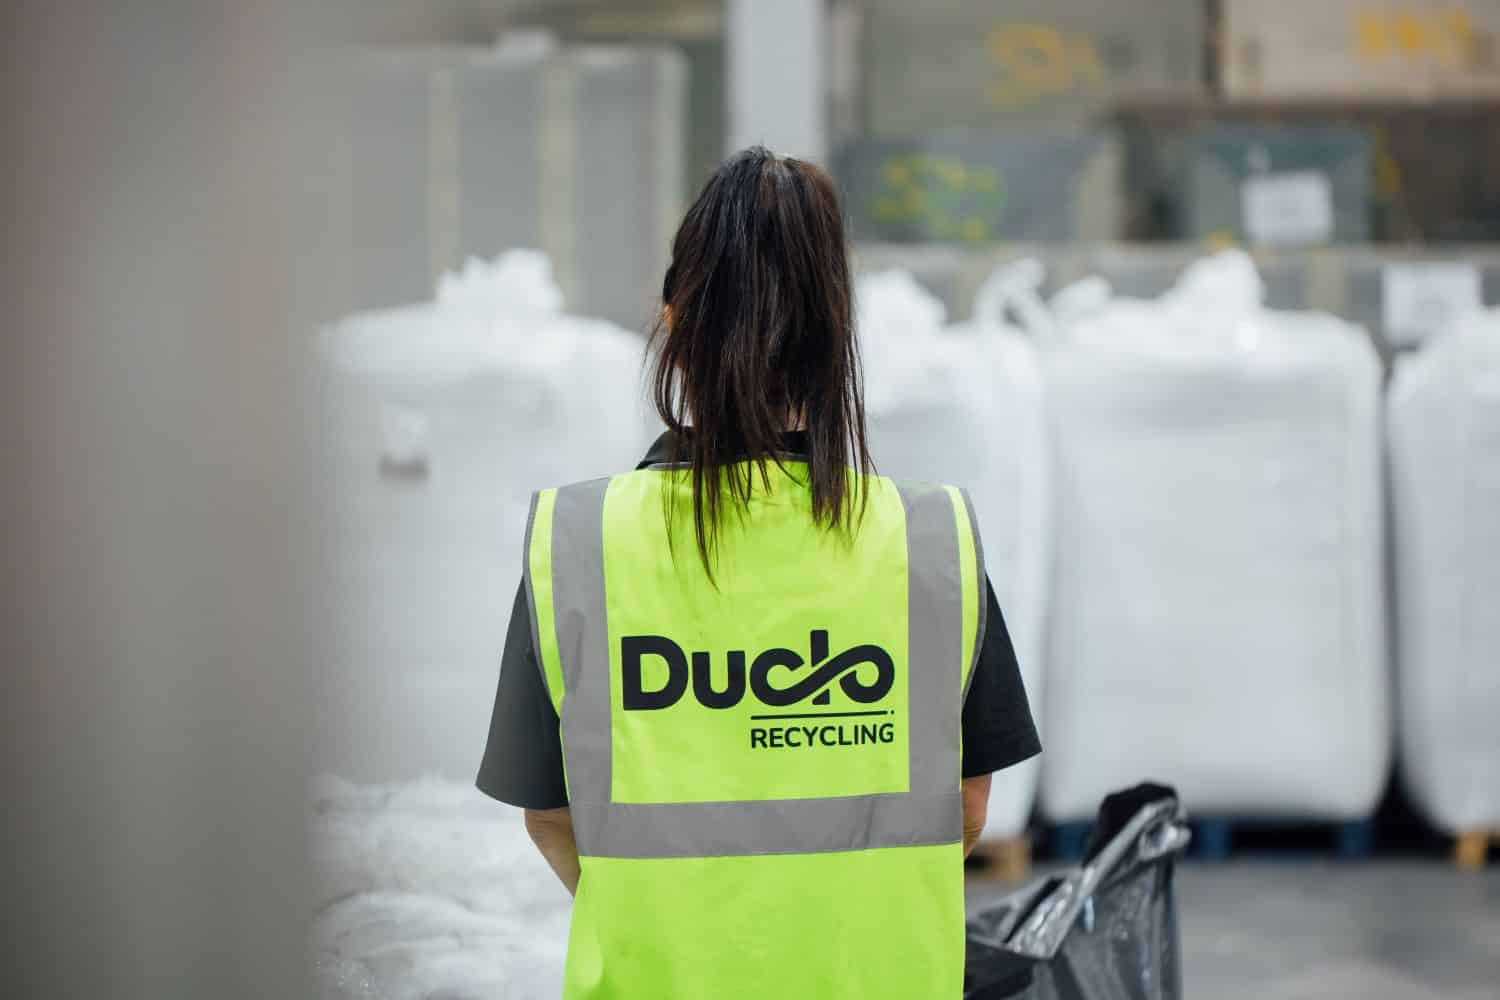 Duclo worker wearing Duclo branded Hi-Vis